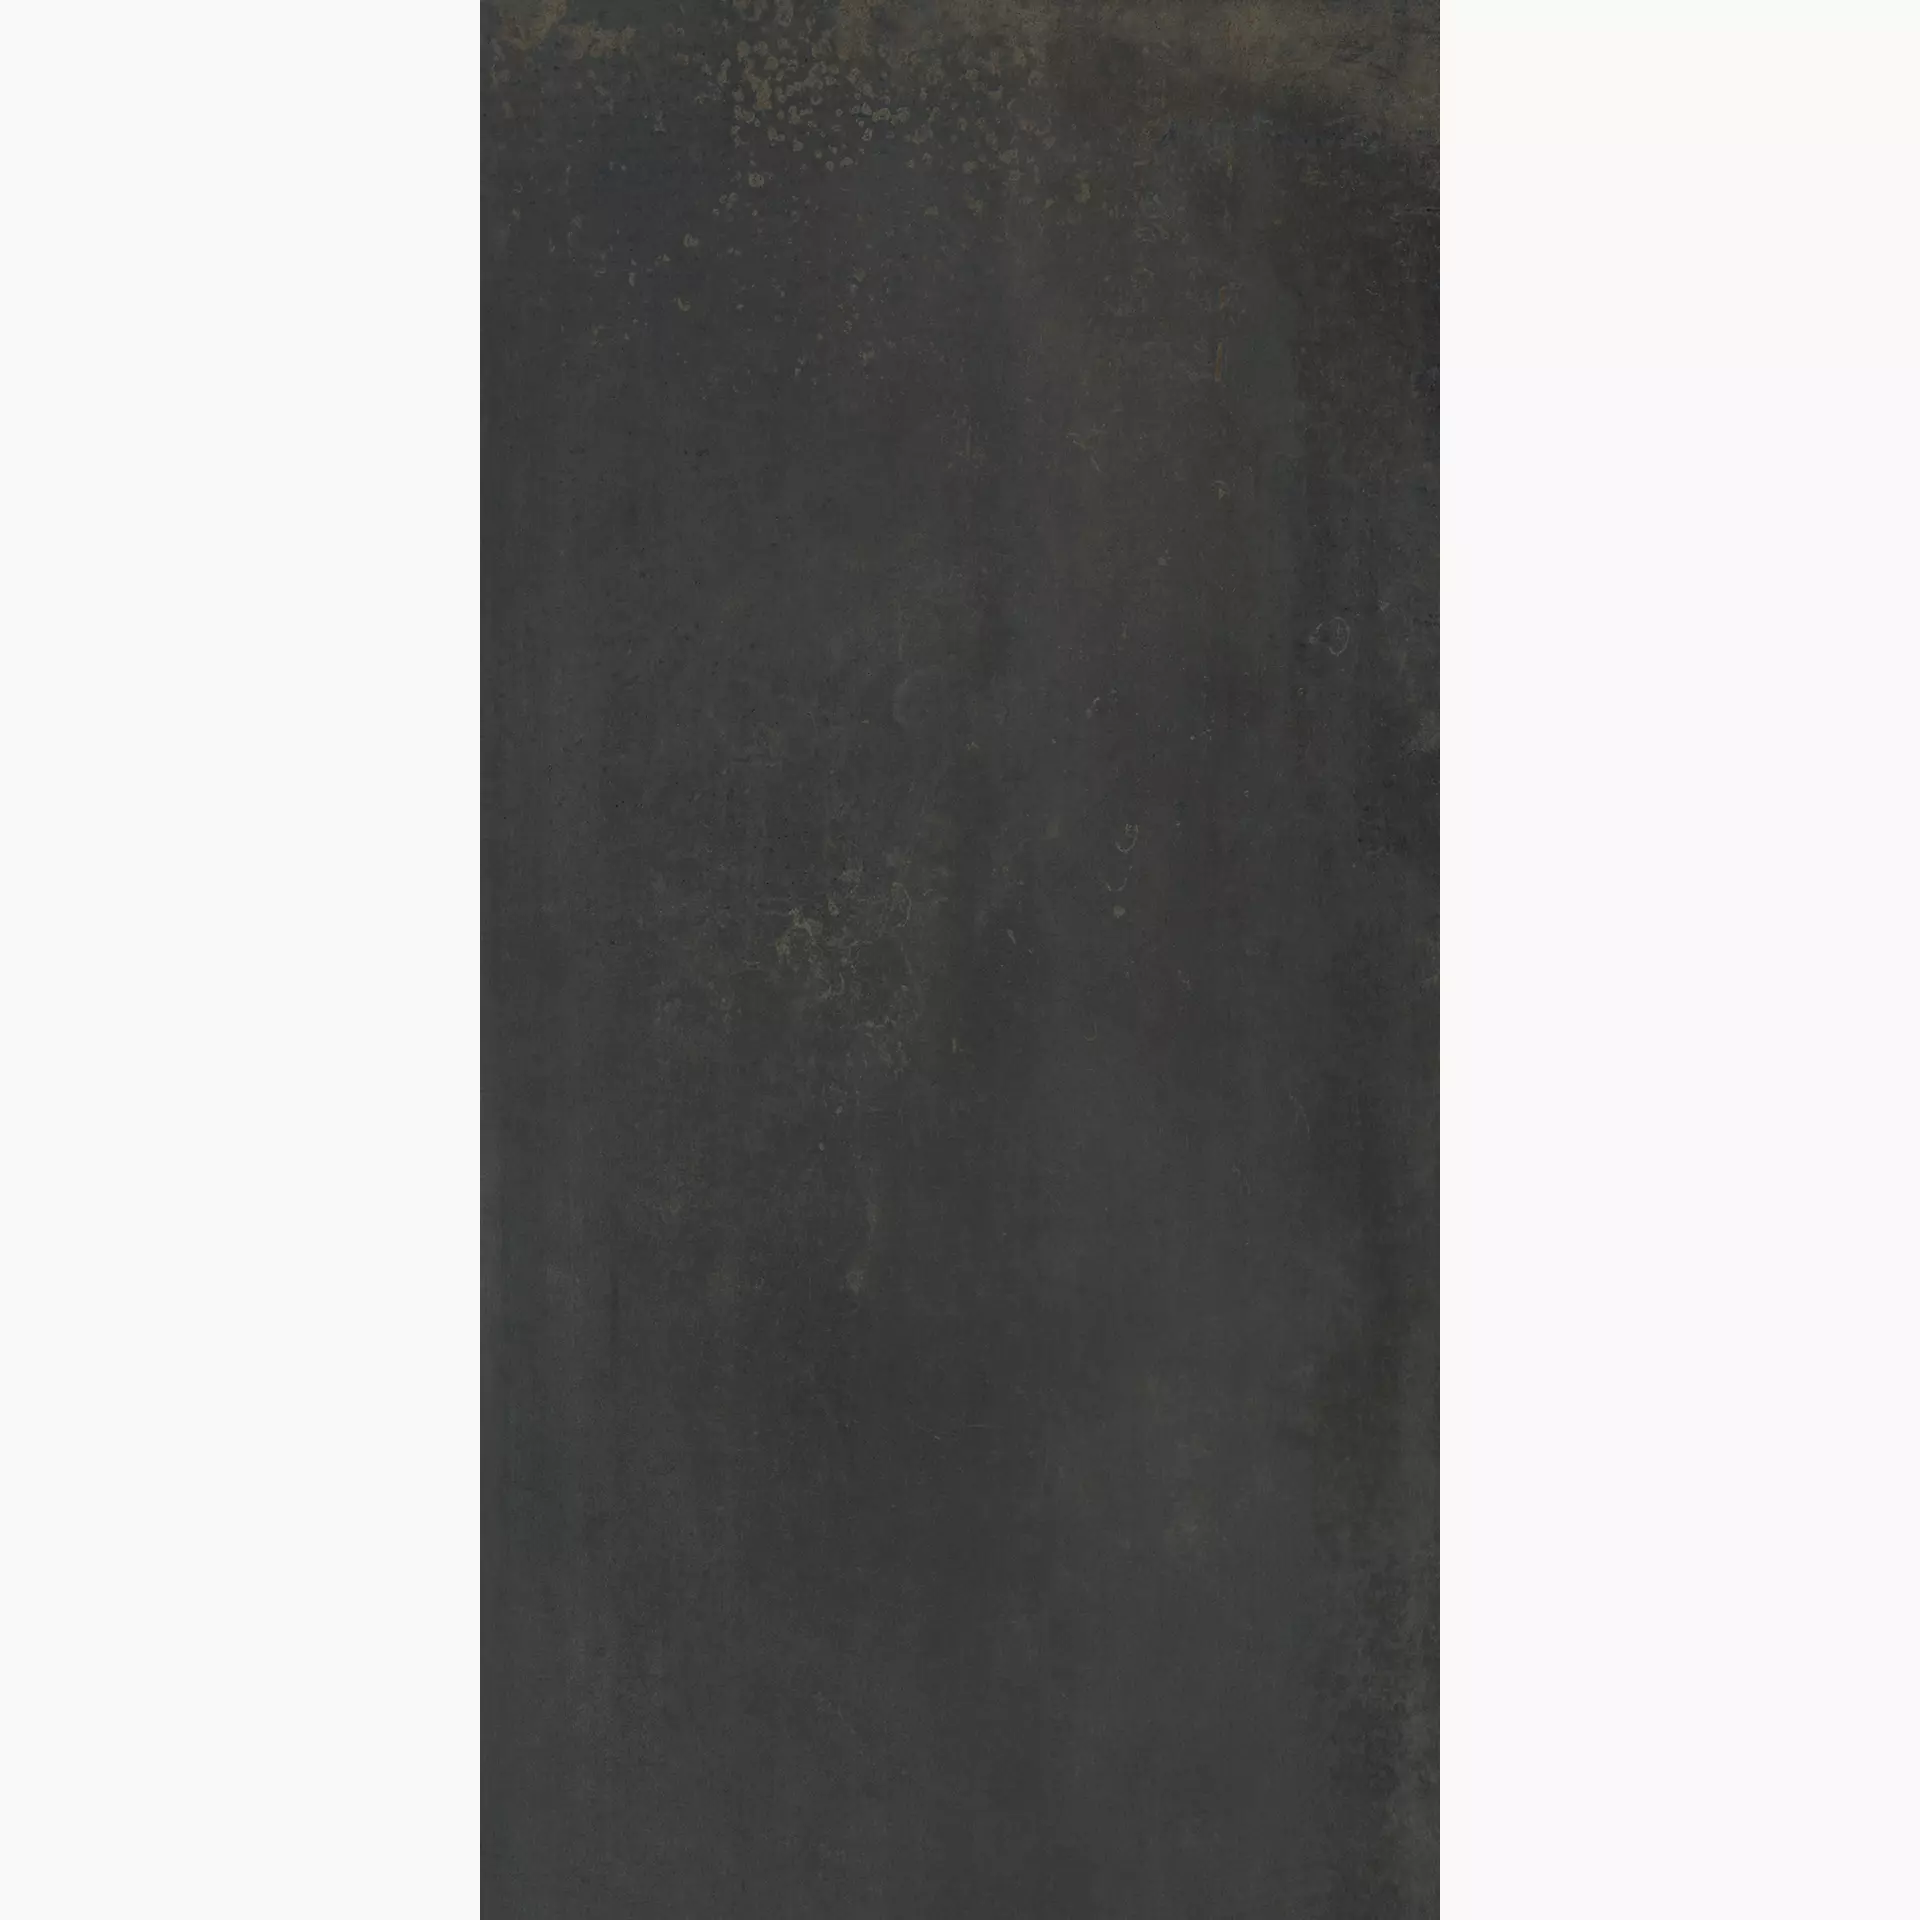 KRONOS Metallique Noir Oxyde Naturale ME025 60x120cm rectified 9mm